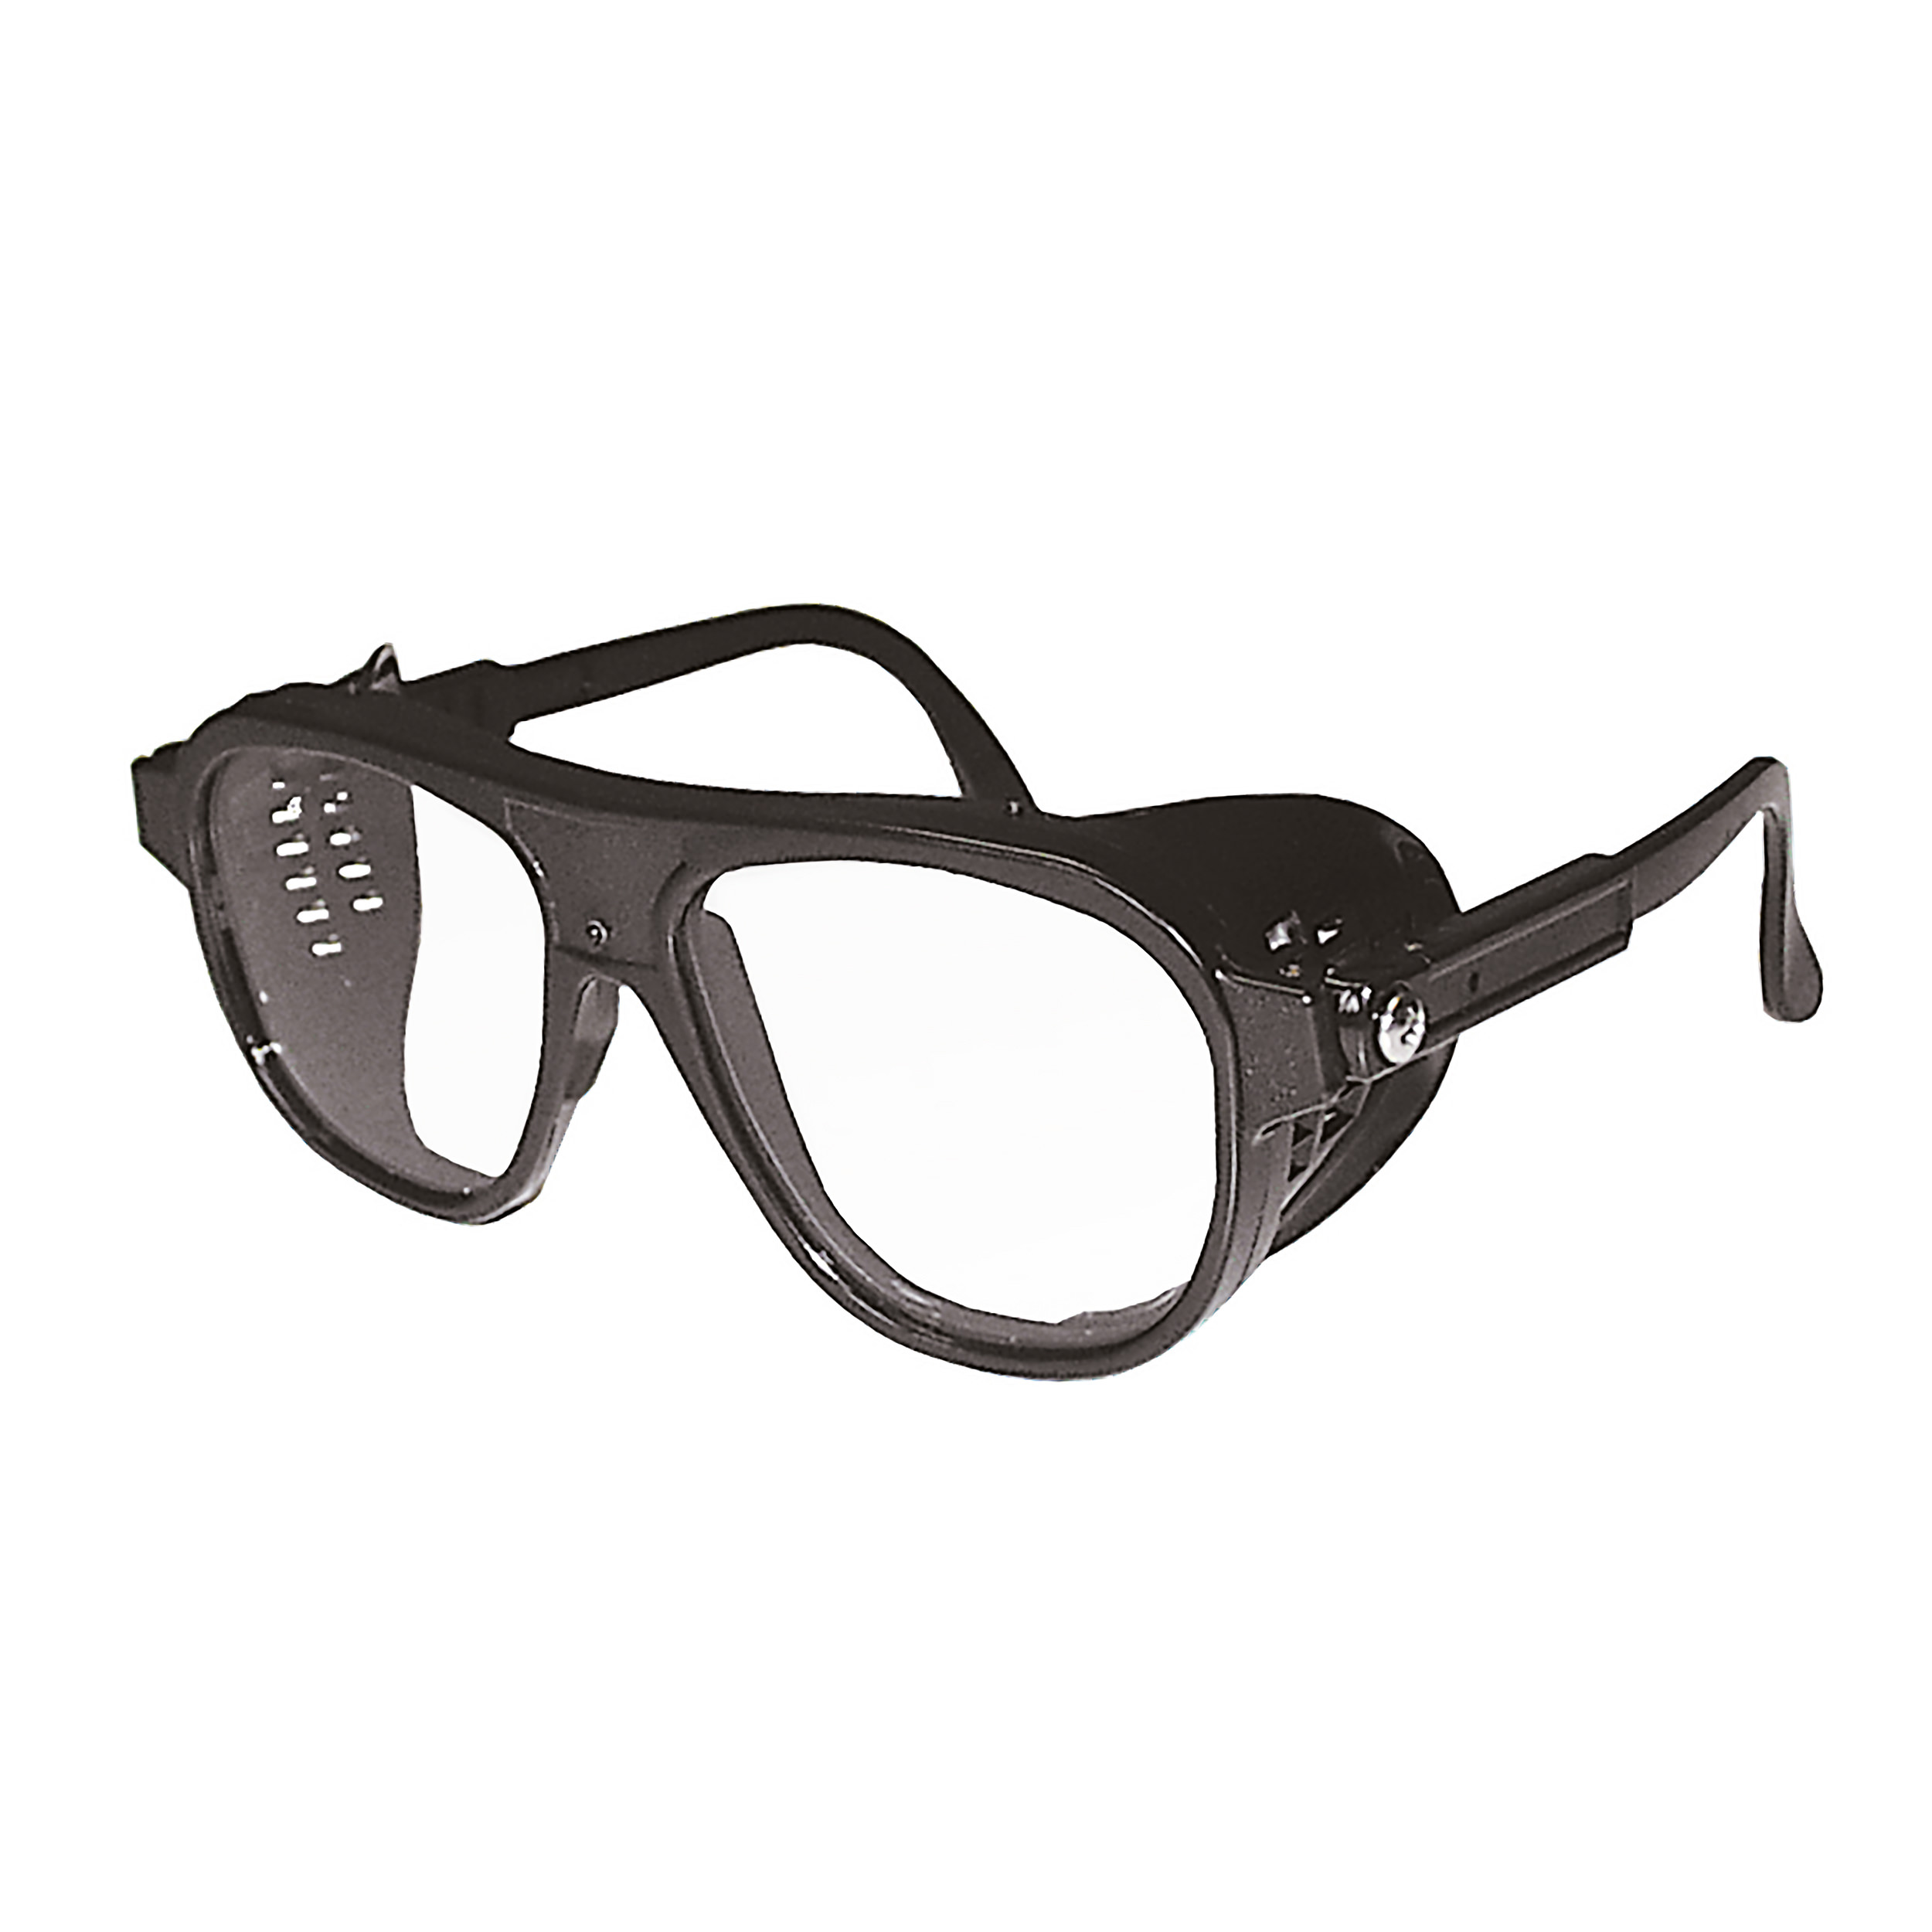 Nylonbrille, schwarz, mit Mittelschraube und längenverstellbarem Bügel, Gläser oval 52x62mm, farblos, splitterfrei